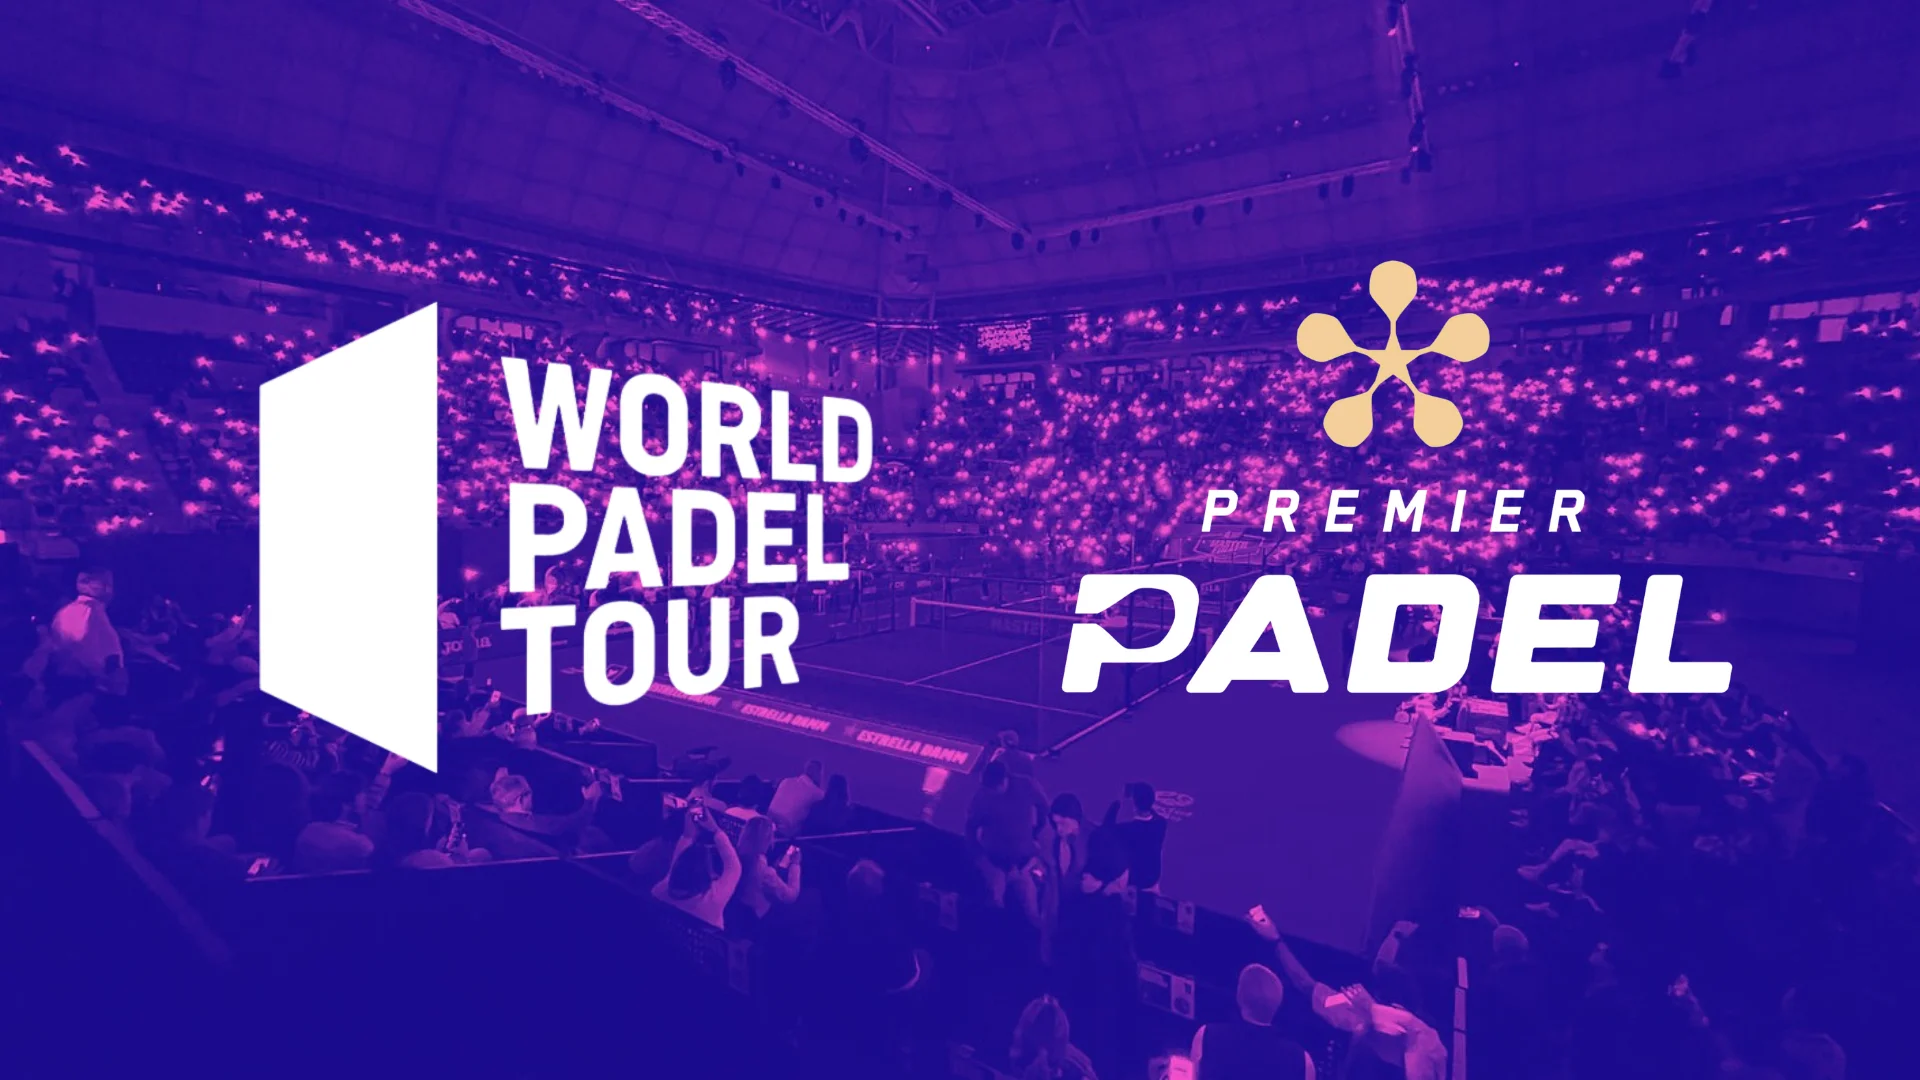 Le World Padel Tour et Premier Padel possono davvero essere uno?